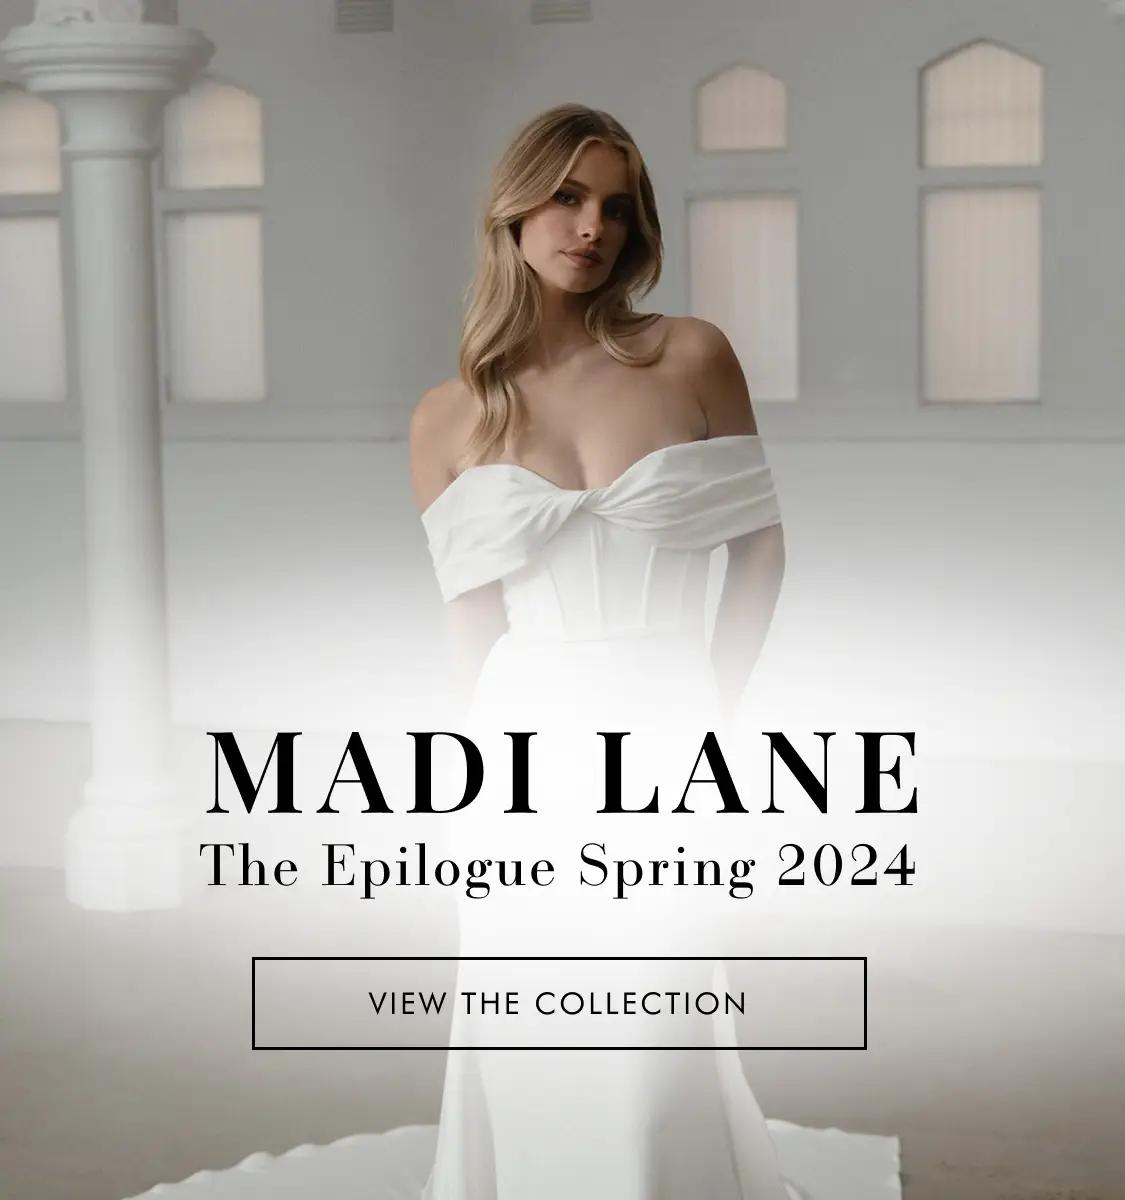 Madi Lane Spring 2024 new banner for mobile